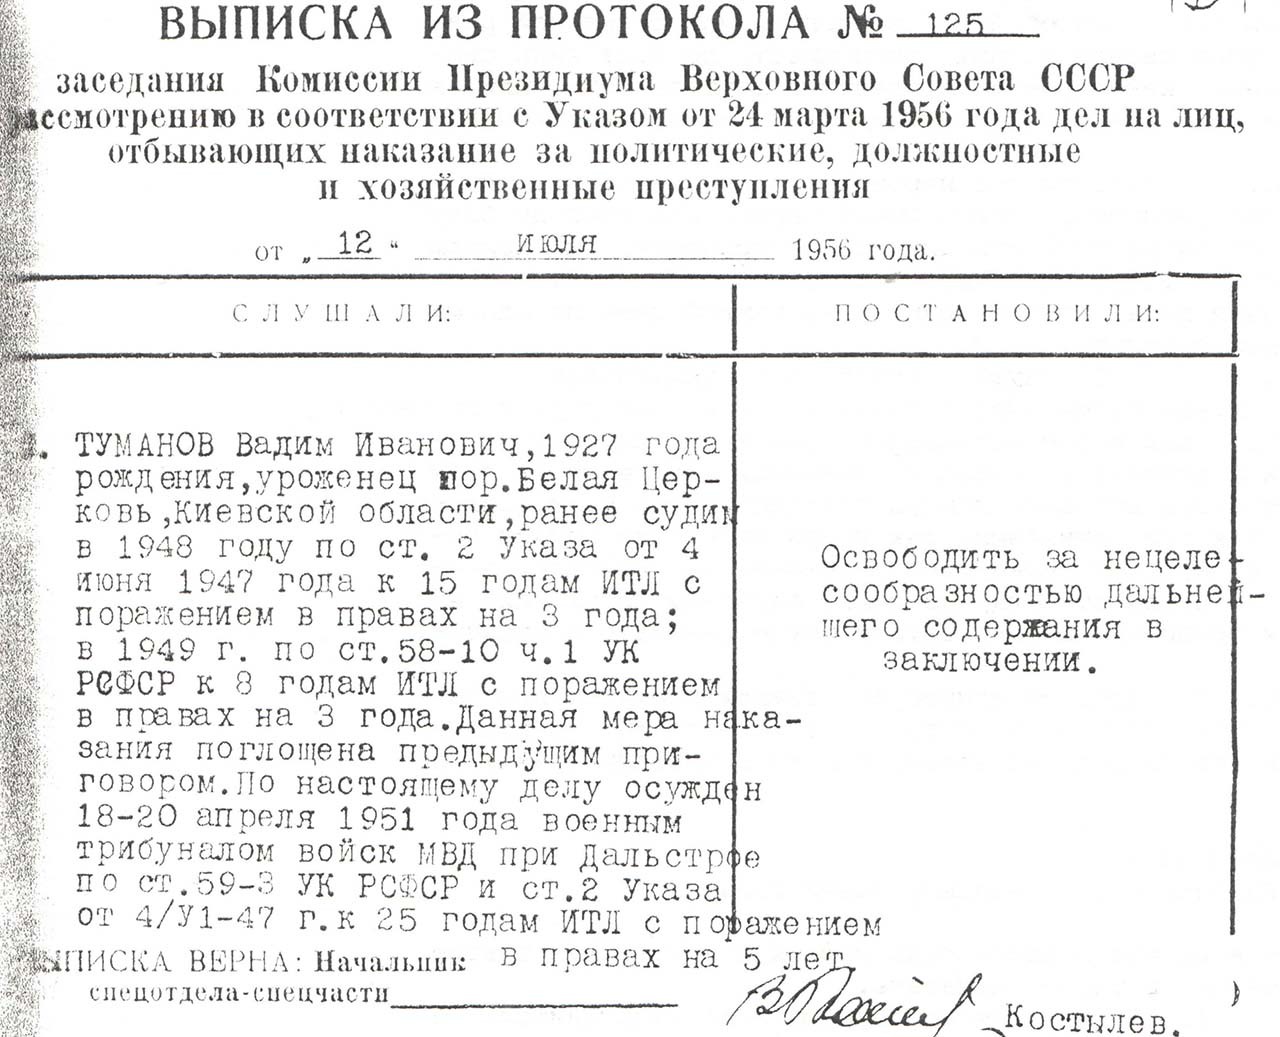 Ст. 2 Указа от 4-го июня 1947 года - хищение государственного и общественного имущества; ст. 59-3 УК РСФСР - бандитизм.